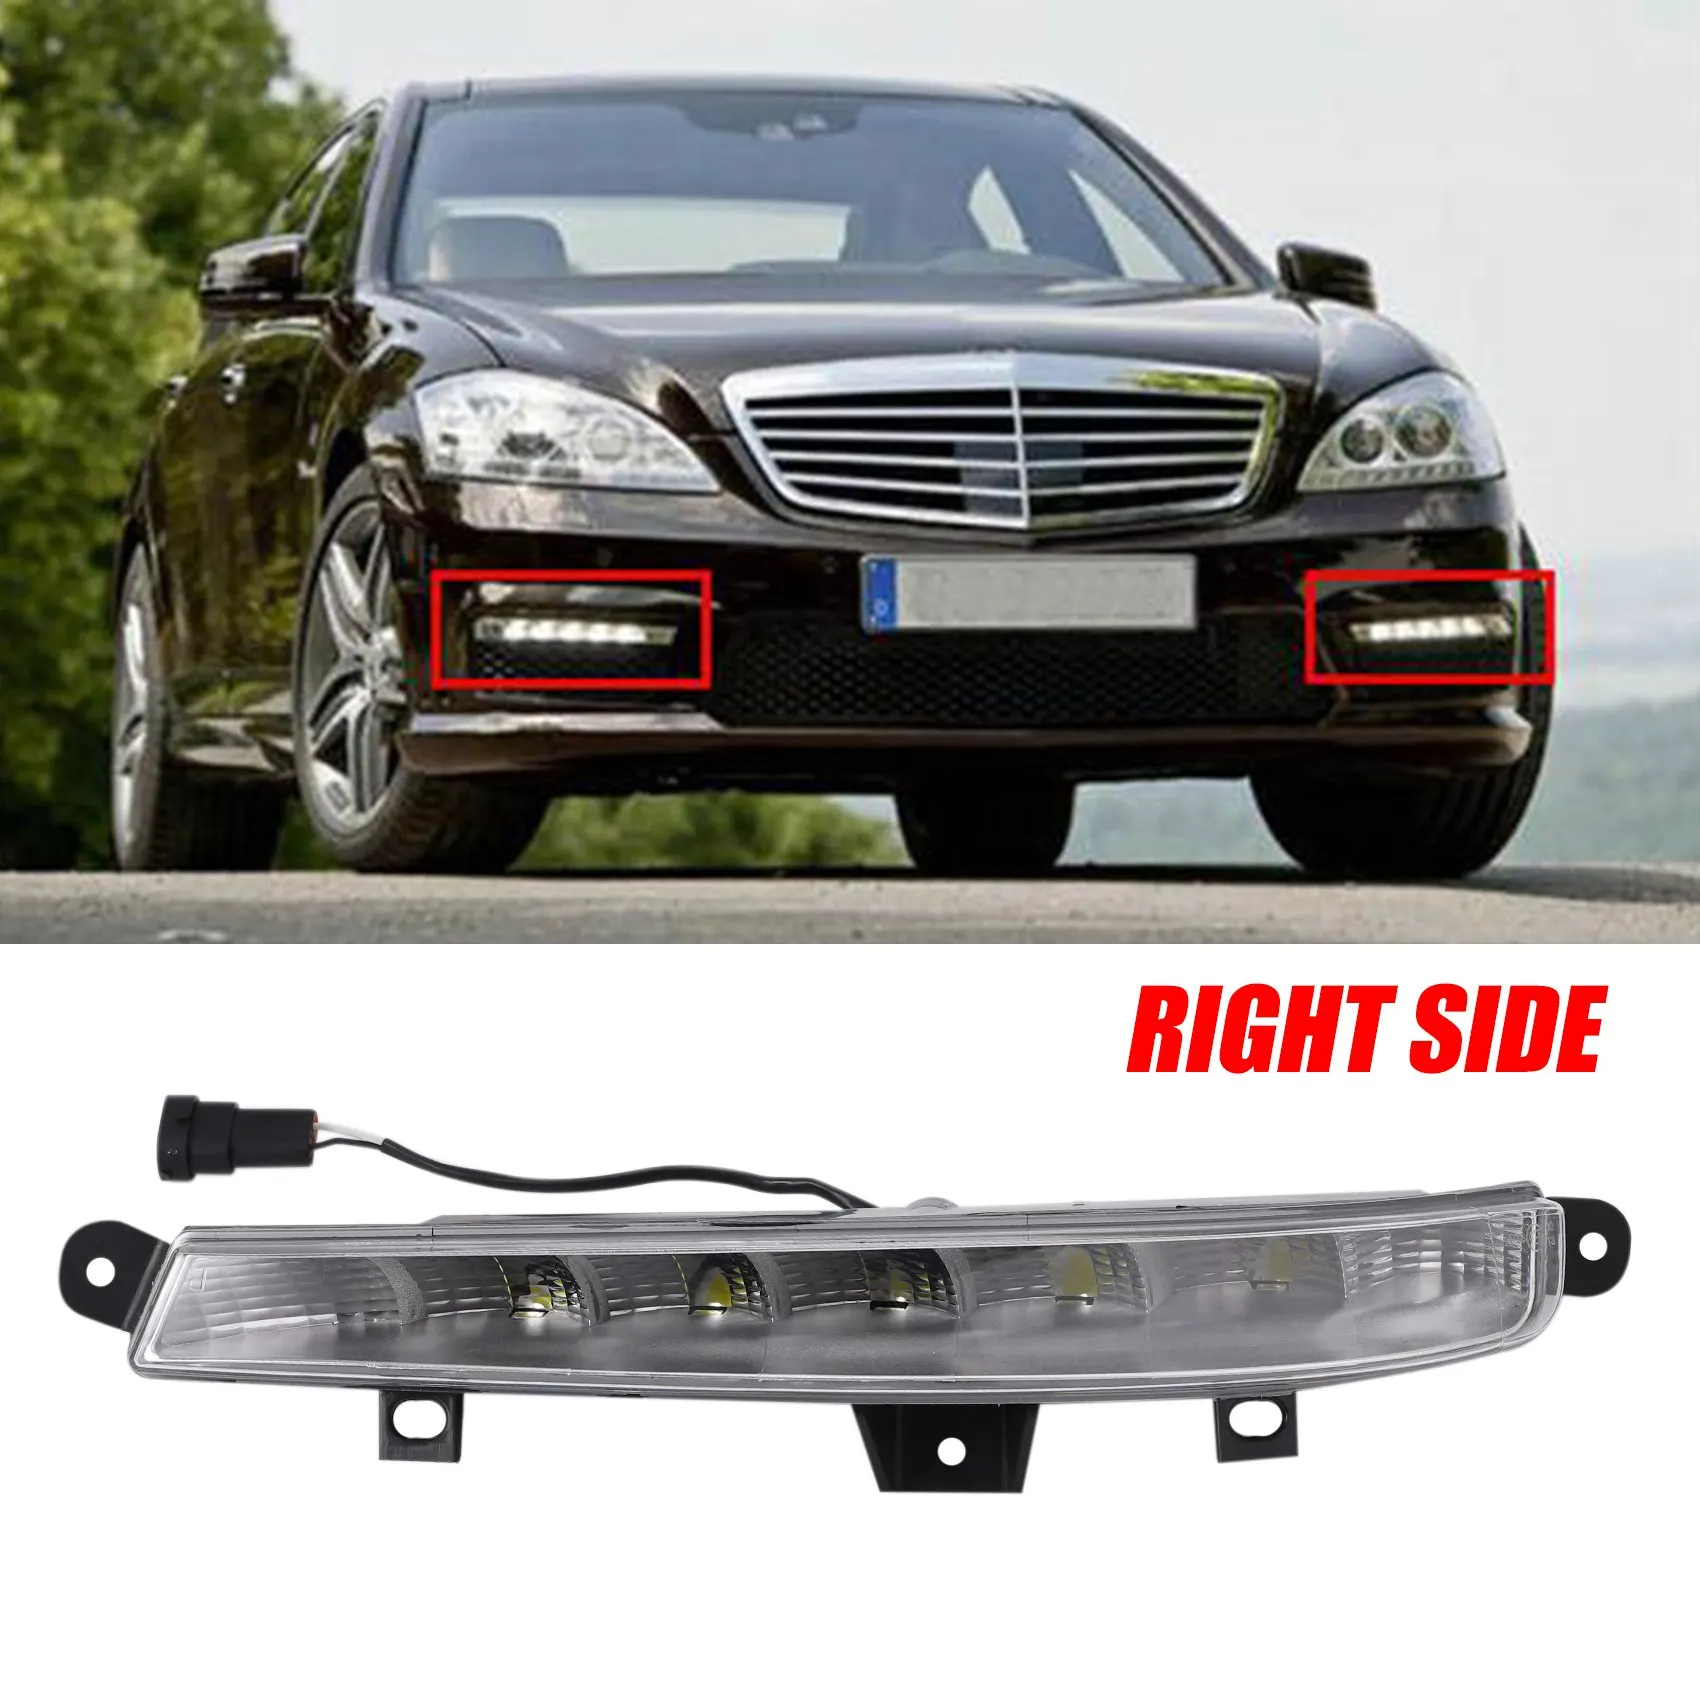 Автомобили от Дясната Страна DRL LED Фарове за мъгла Дневни Светлини за Mercedes Benz W221 S63 AMG 2007-2013 2218201456